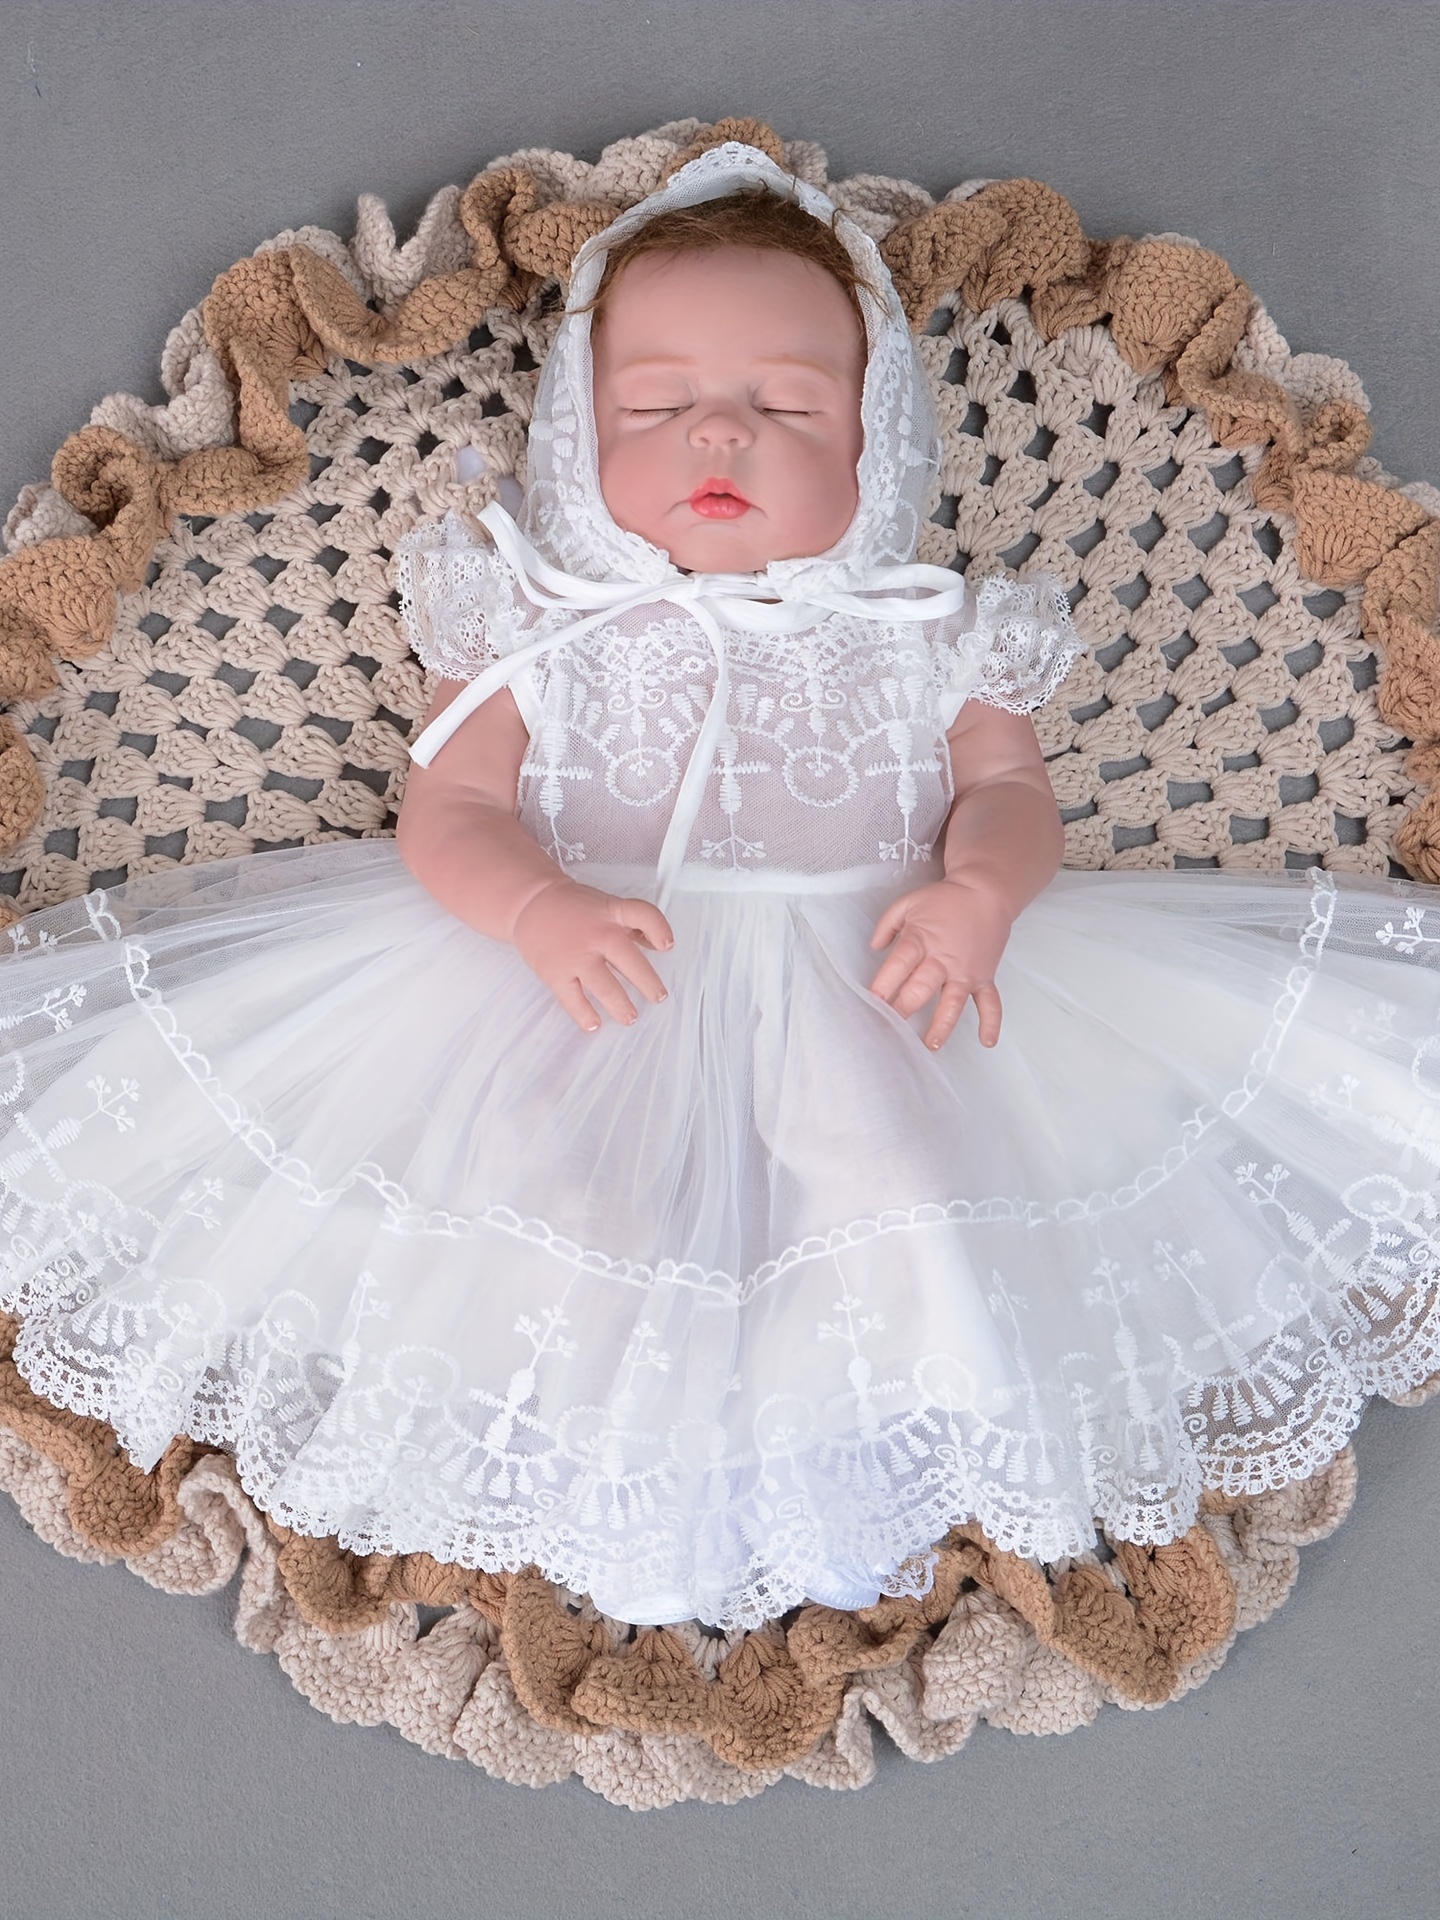 Conjuntos De Niña Ropa Para Bebes Recien Nacido Vestidos Trajes De Bebe  Hembra